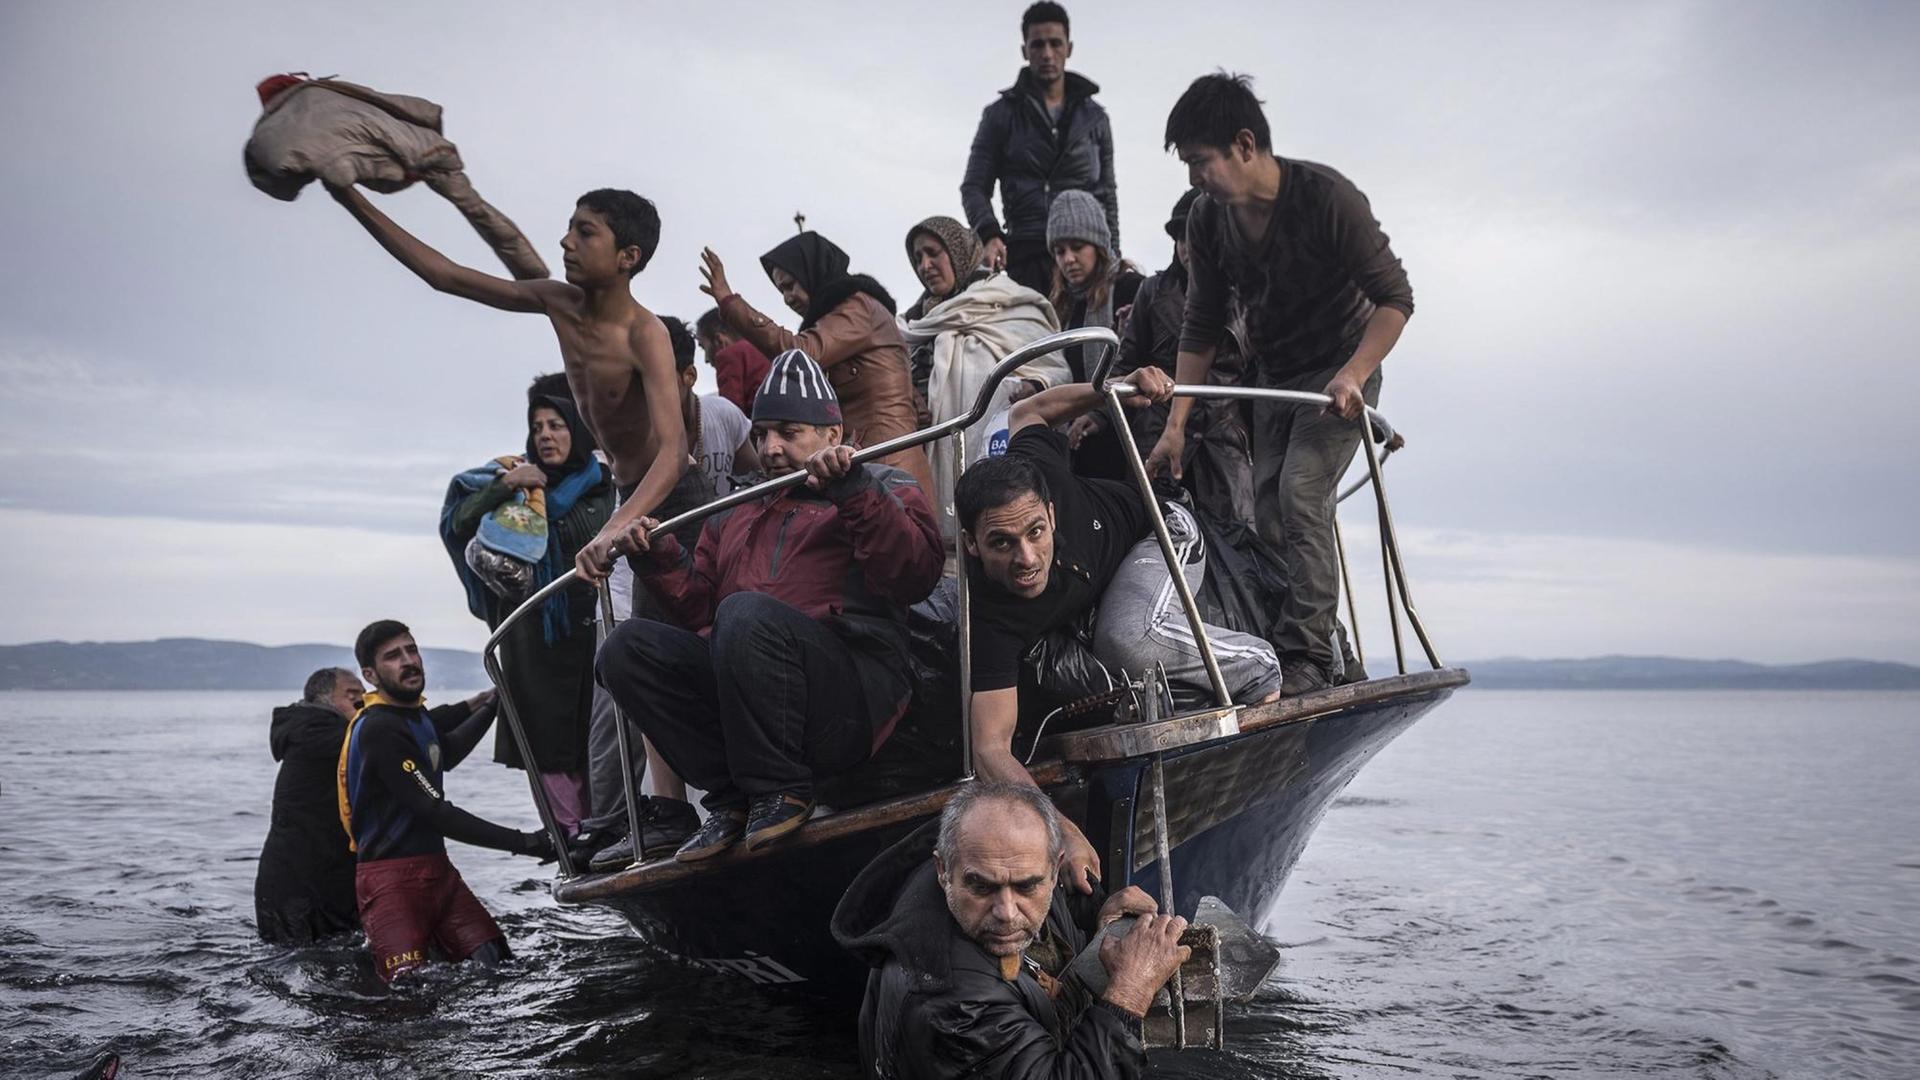 In der Kategorie "General News" gewann der russische Fotograf Sergey Ponomarev den World Press Photo Award für ein Bild eines Flüchtlingsbootes vor den griechischen Inseln.